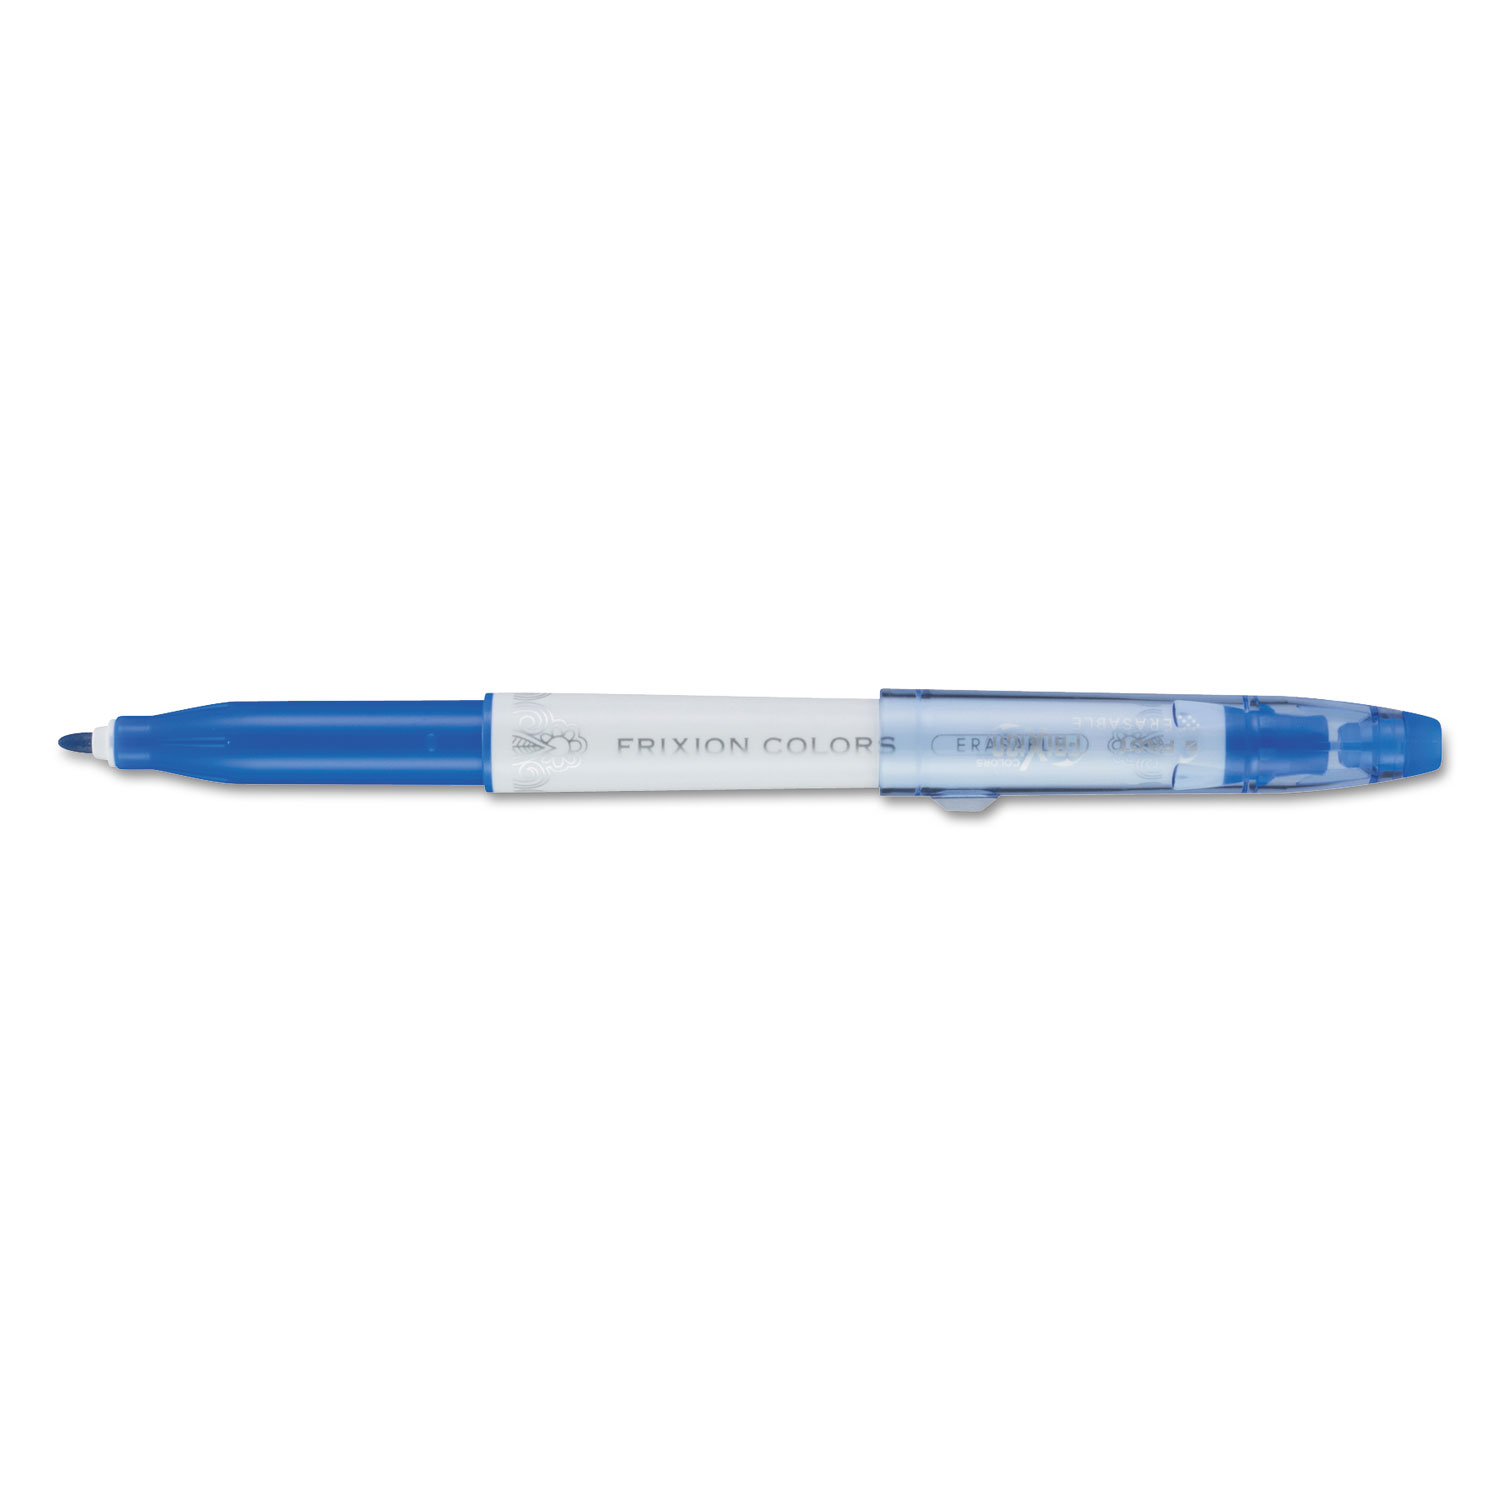  Pilot 41411 FriXion Colors Erasable Stick Marker Pen, 2.5mm, Blue Ink, White Barrel (PIL41411) 